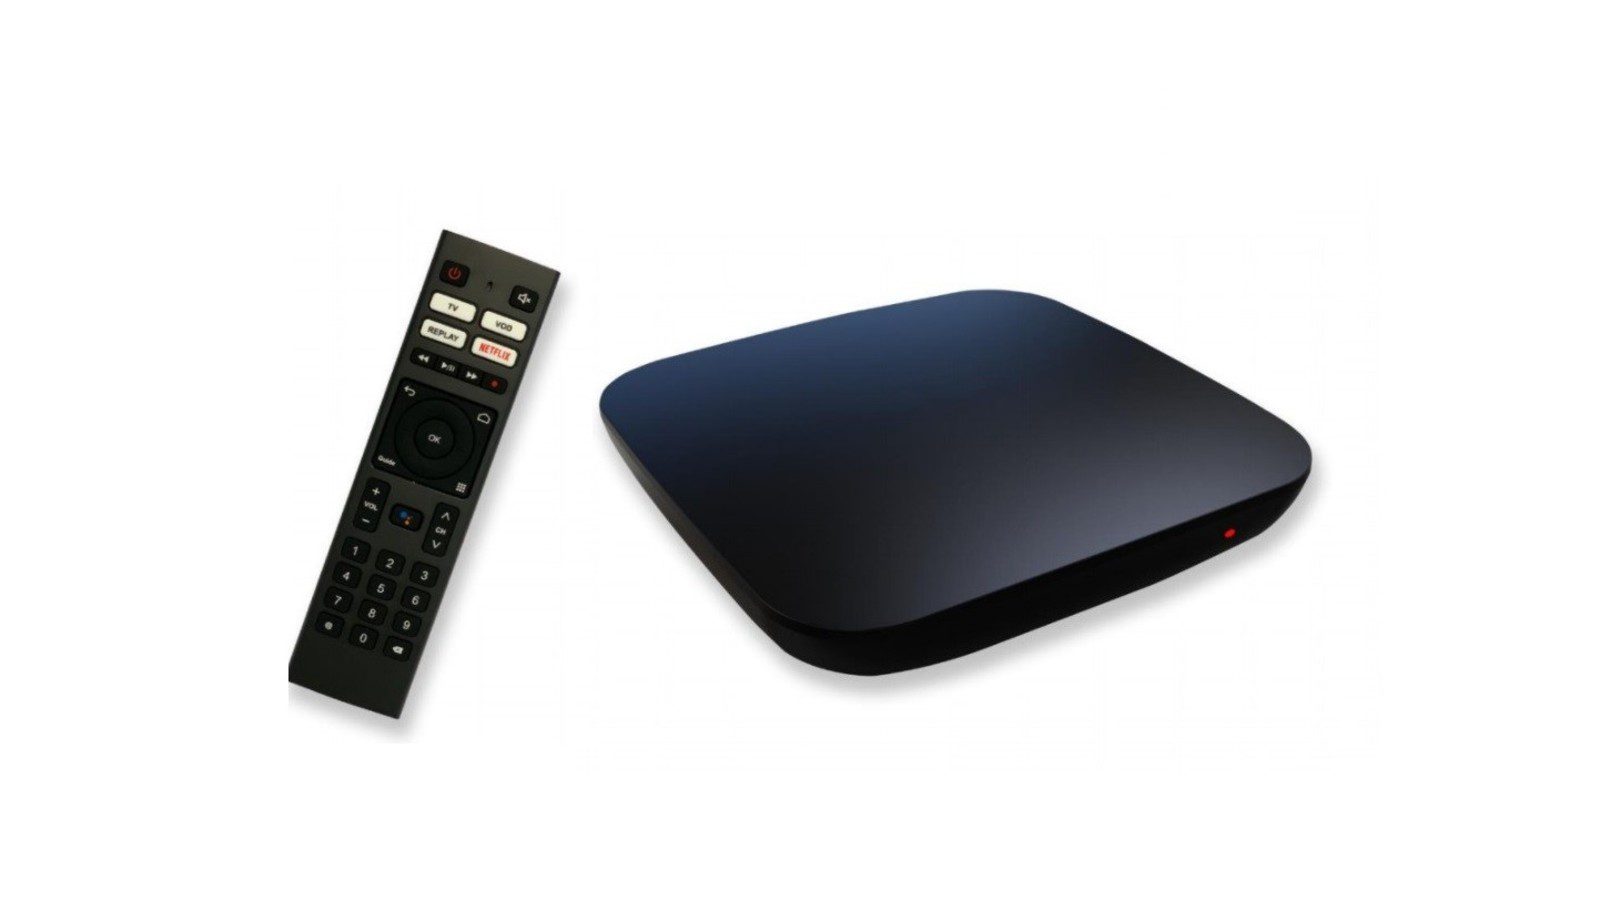 RED by SFR granskar RED box-erbjudandet och tar fram en ny Android TV set-top box